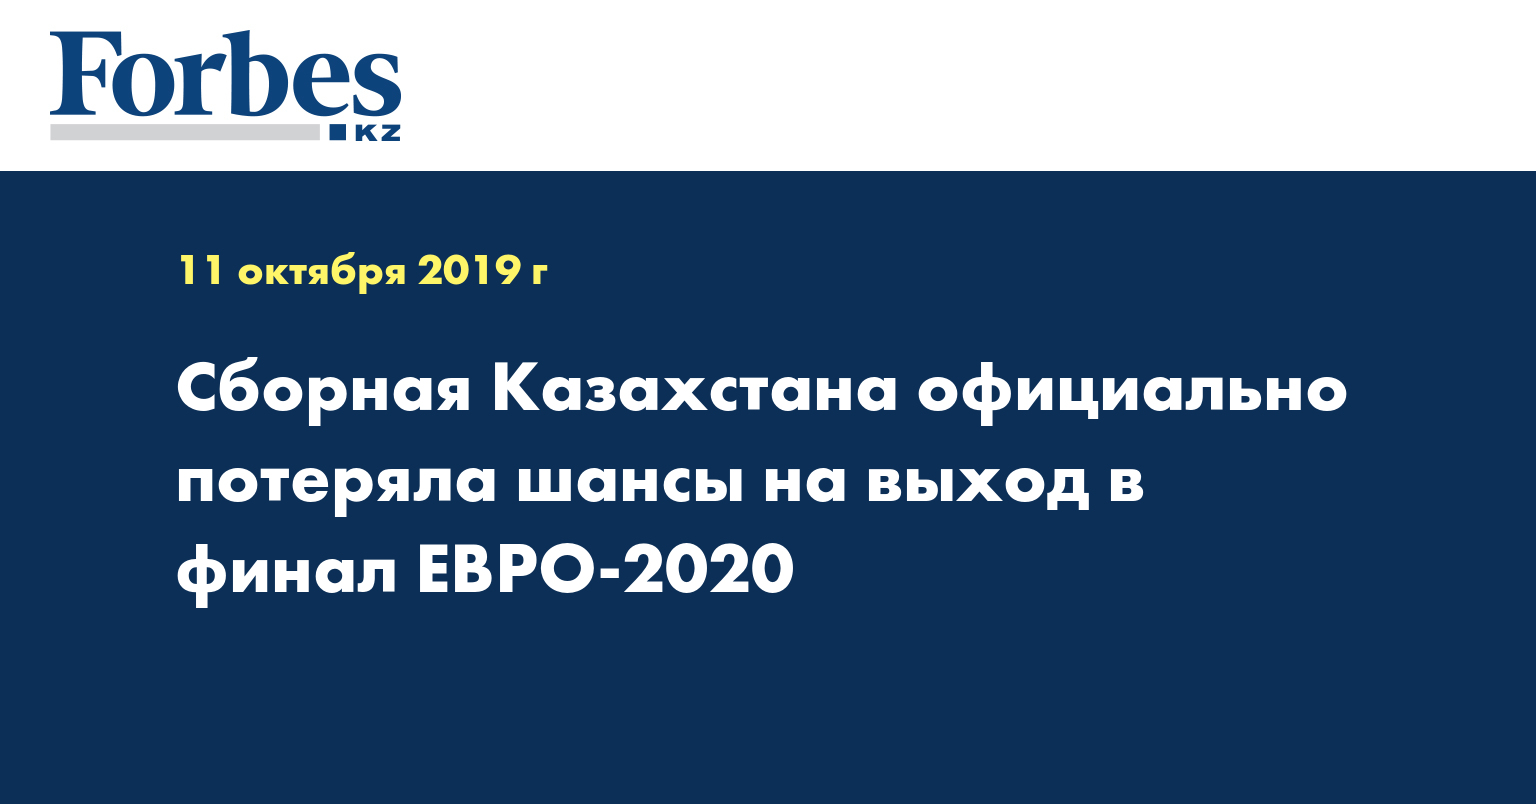 Сборная Казахстана официально потеряла шансы на выход в финал ЕВРО-2020